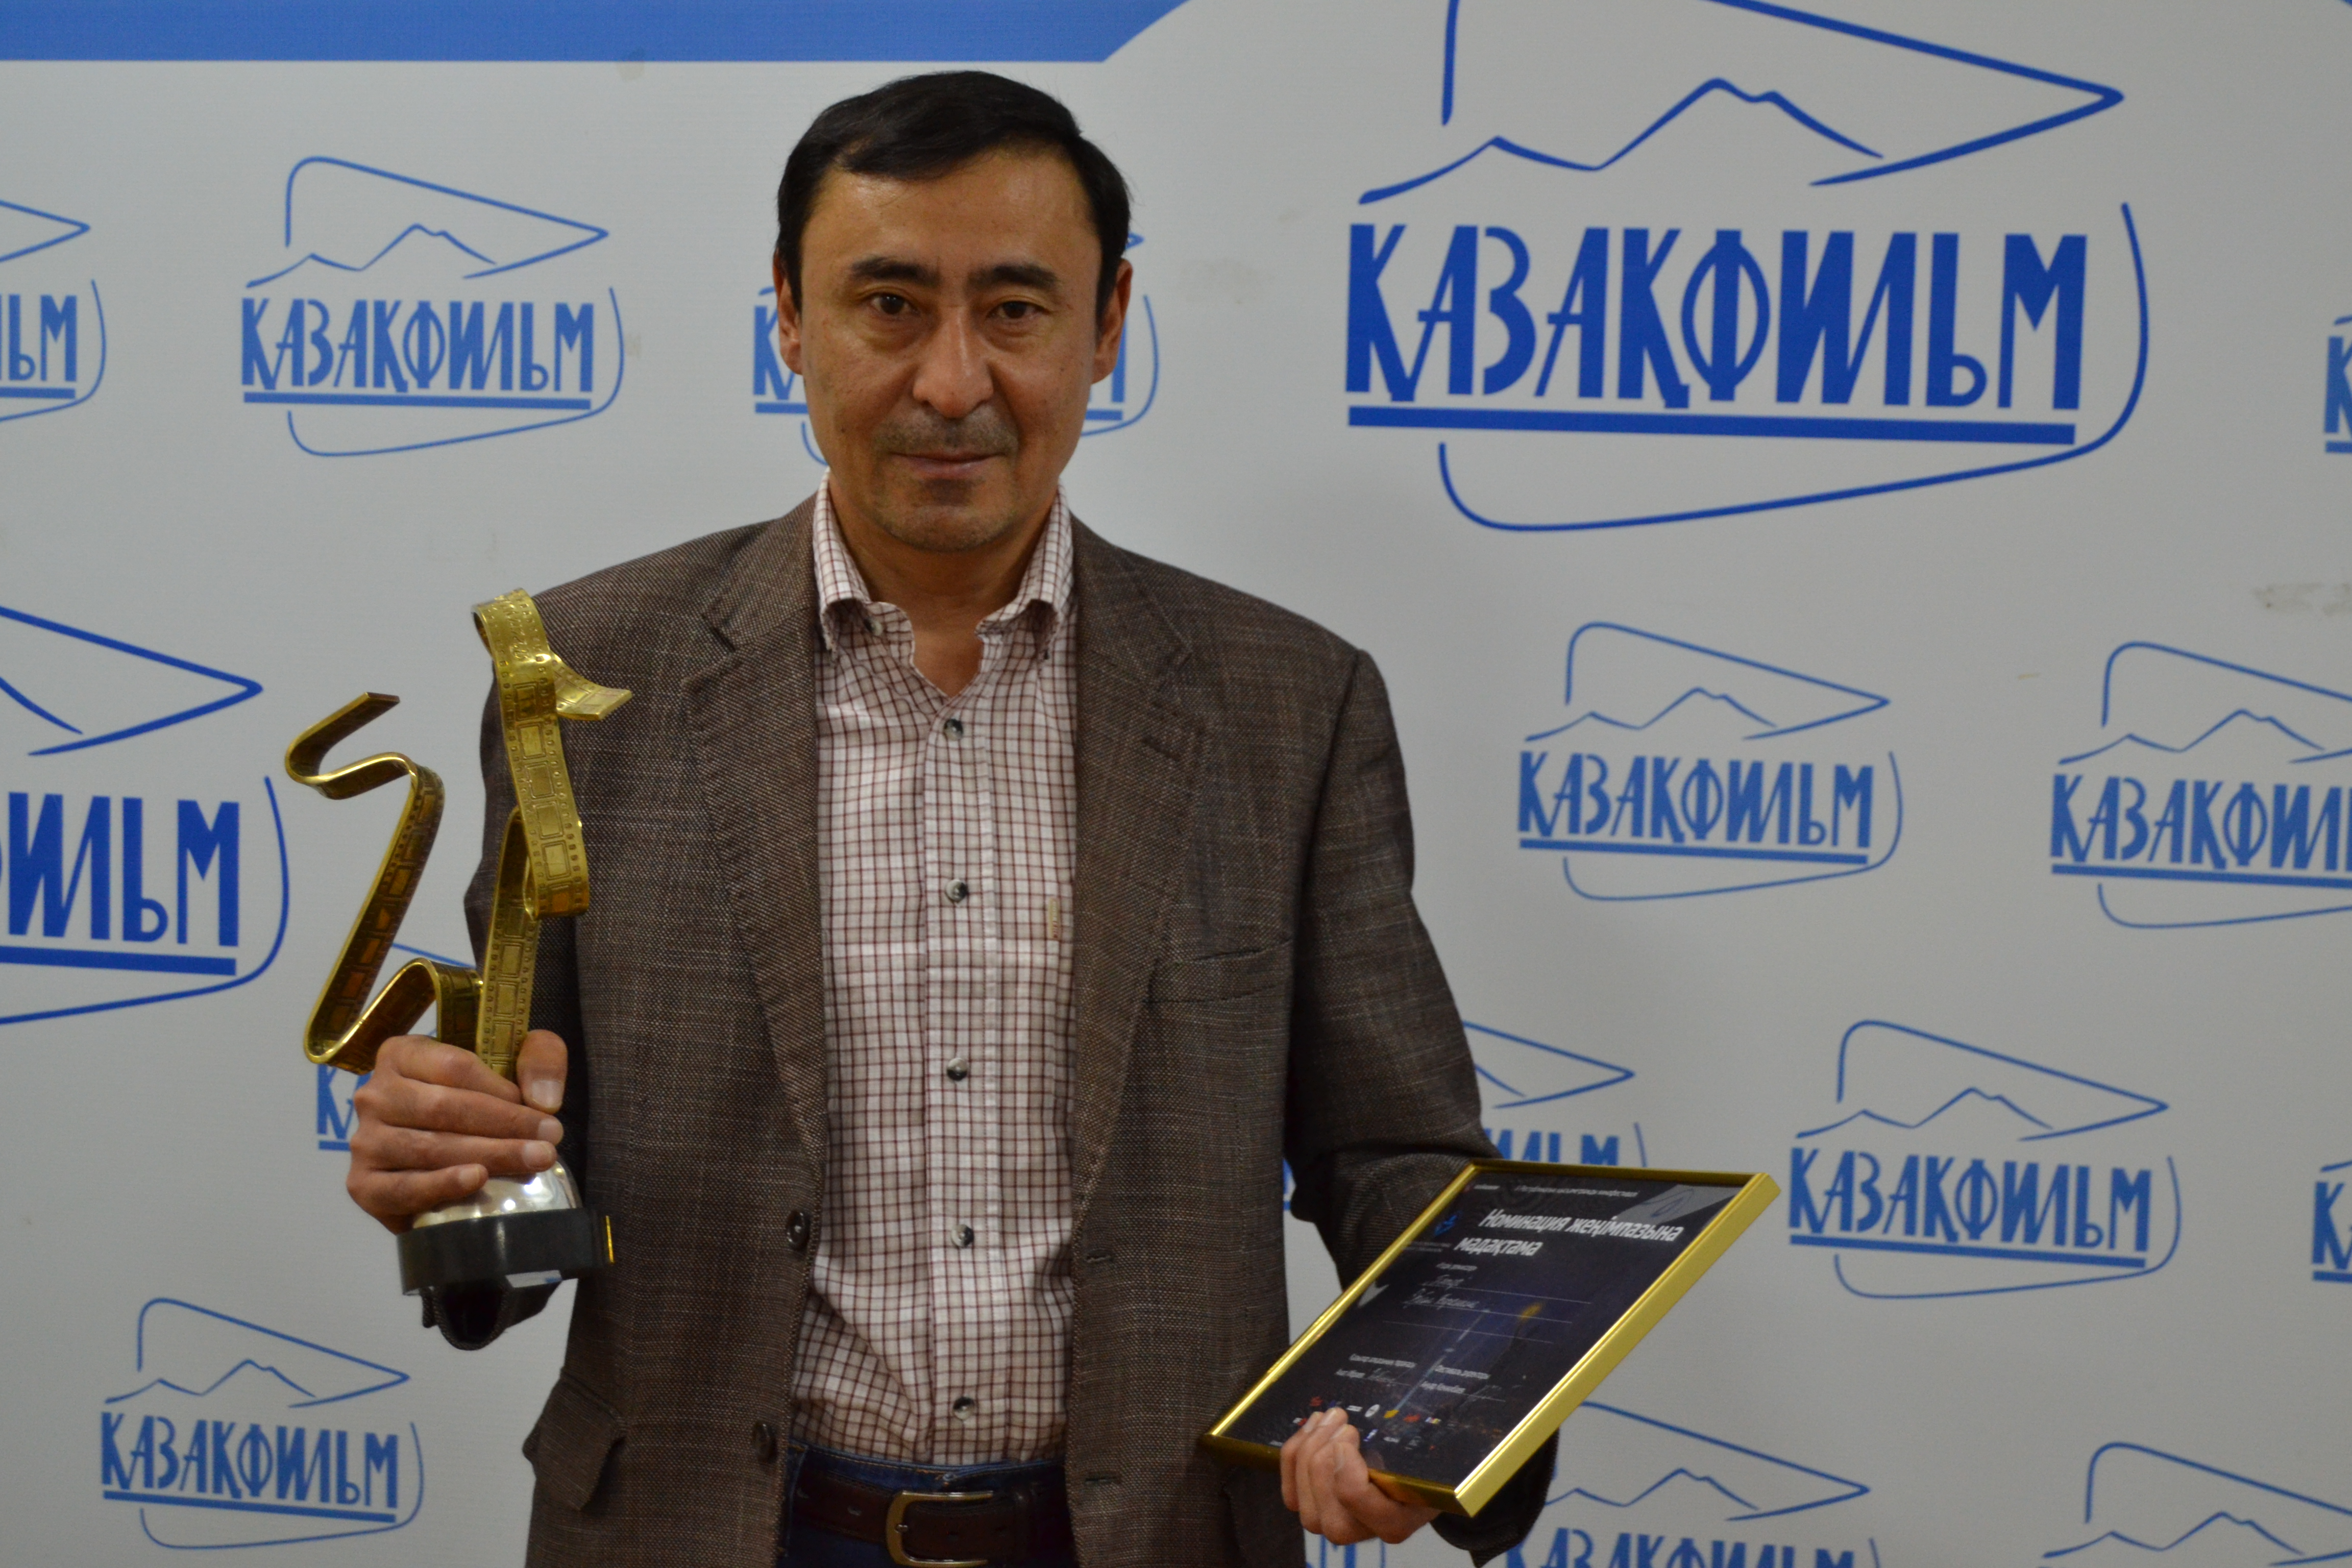 Победитель Baikonyr Short Film Fest Баймурат Жуманов снимает новый фильм